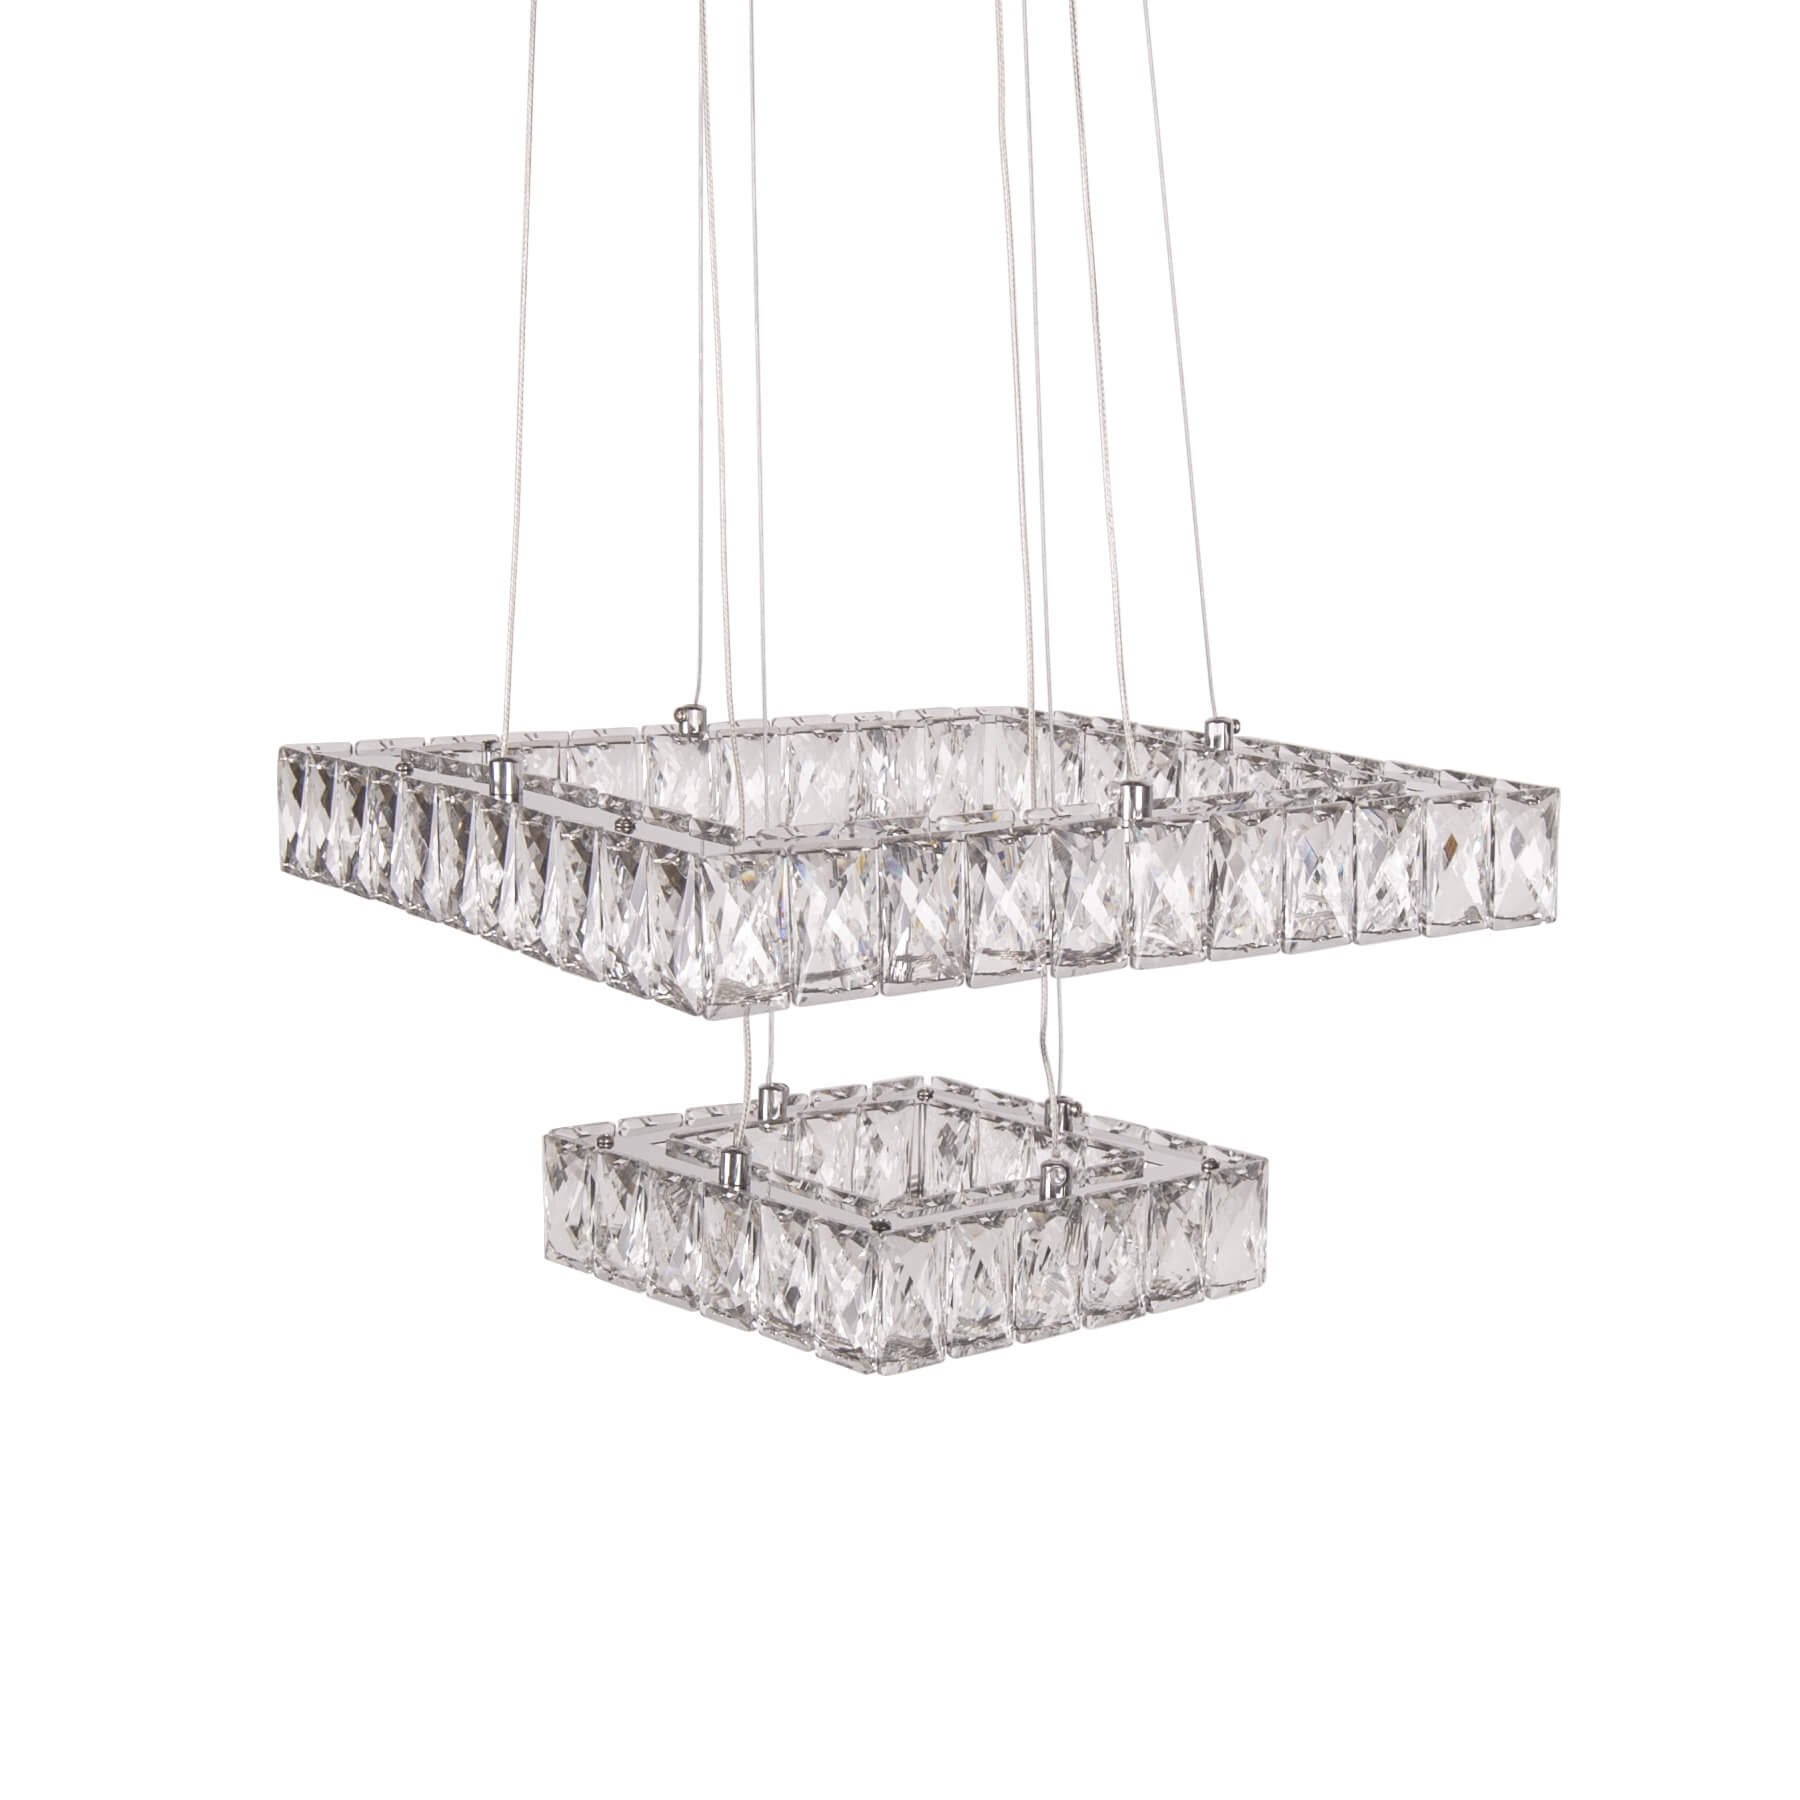 Lustra argintie cu LED ZURI din sticla, design modern, elegant, pentru living sau dining